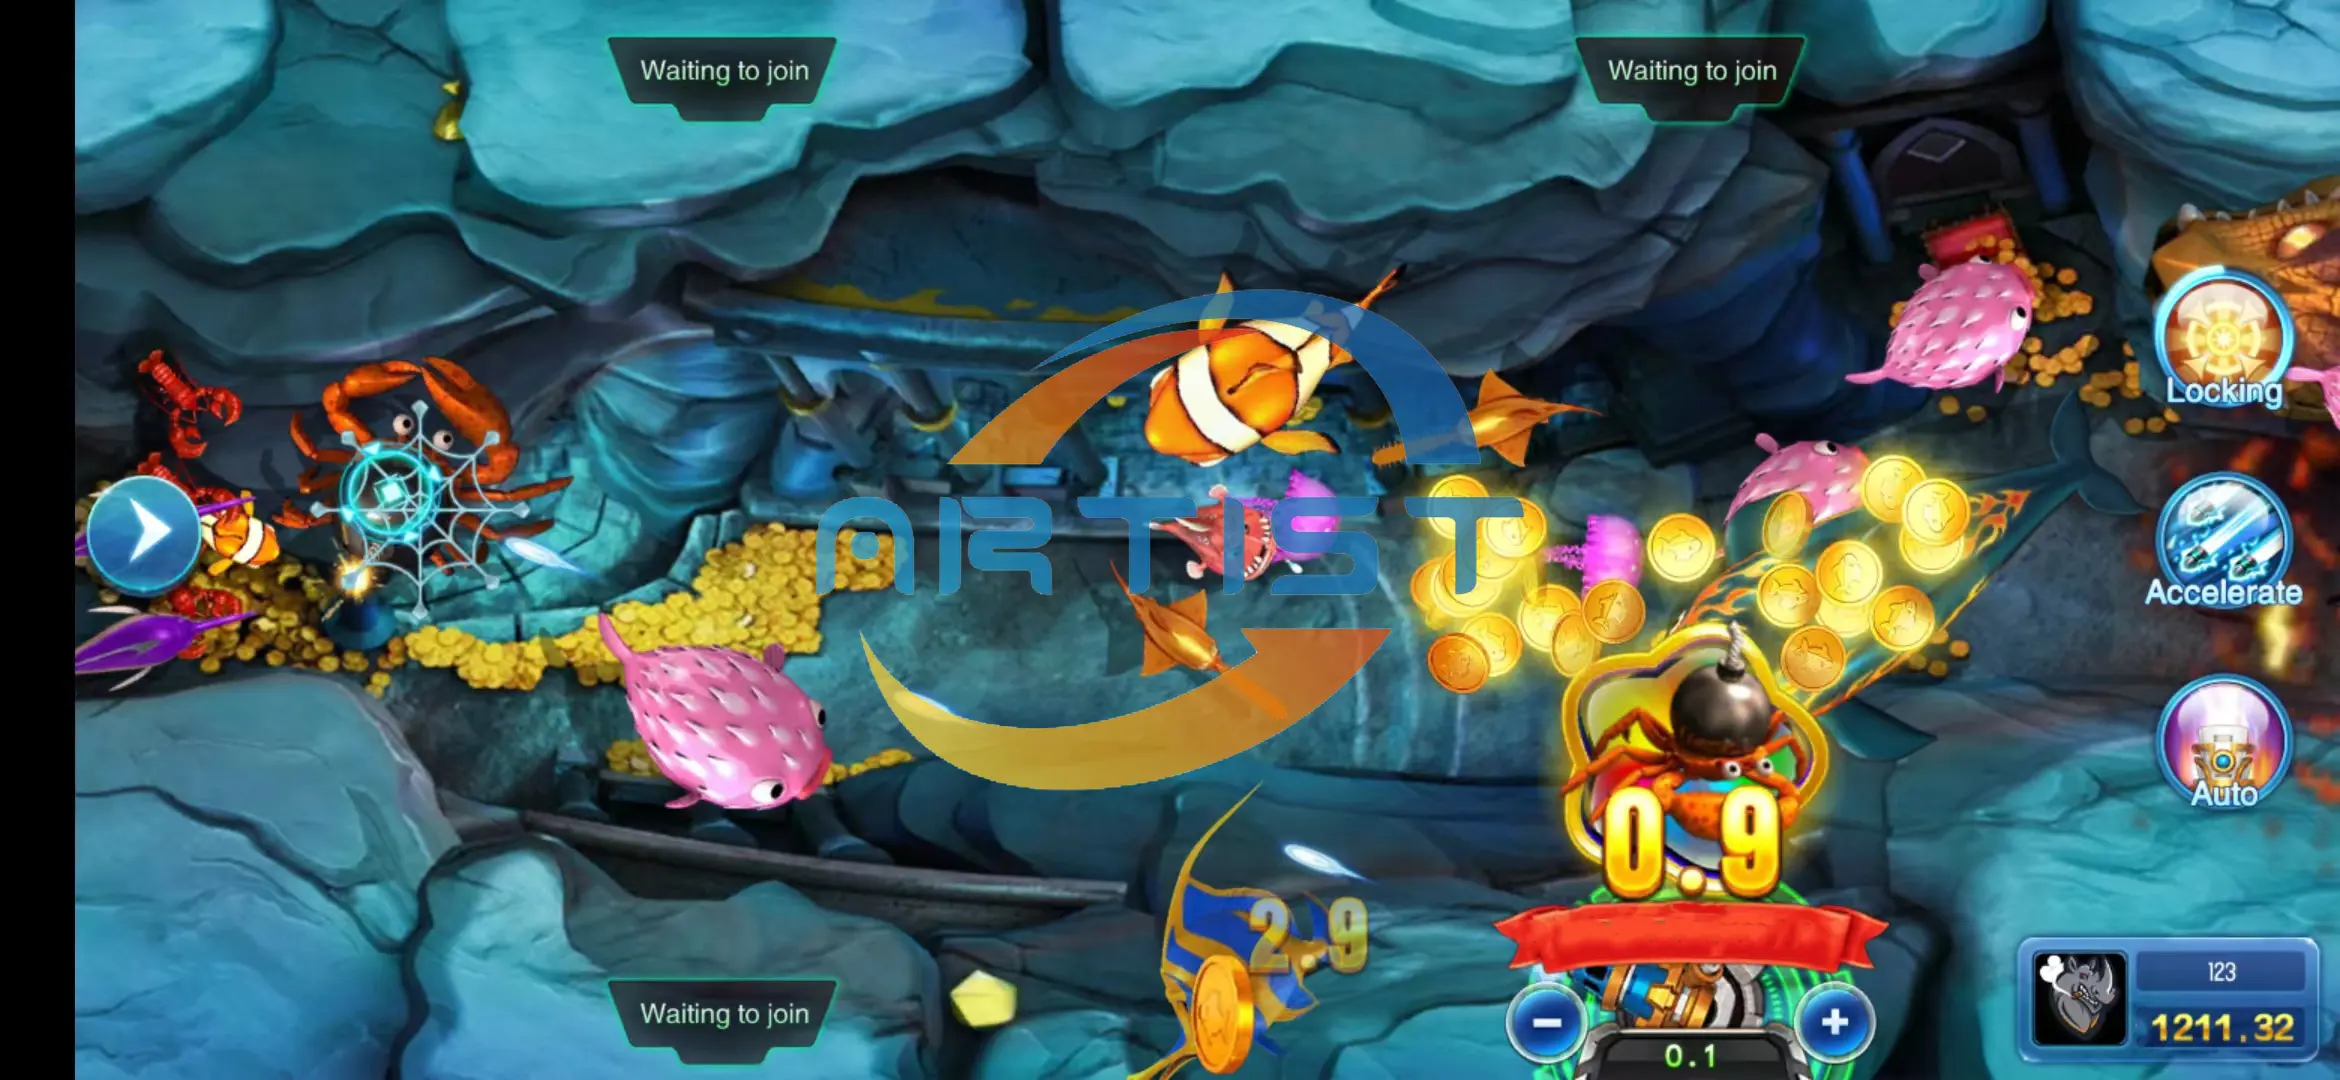 Neue Version Noble King of Pop Orion Power Star Link Arcade-Spielzimmer Fusion 5 Online-Software Mobile Plattform Online-Fischs piele